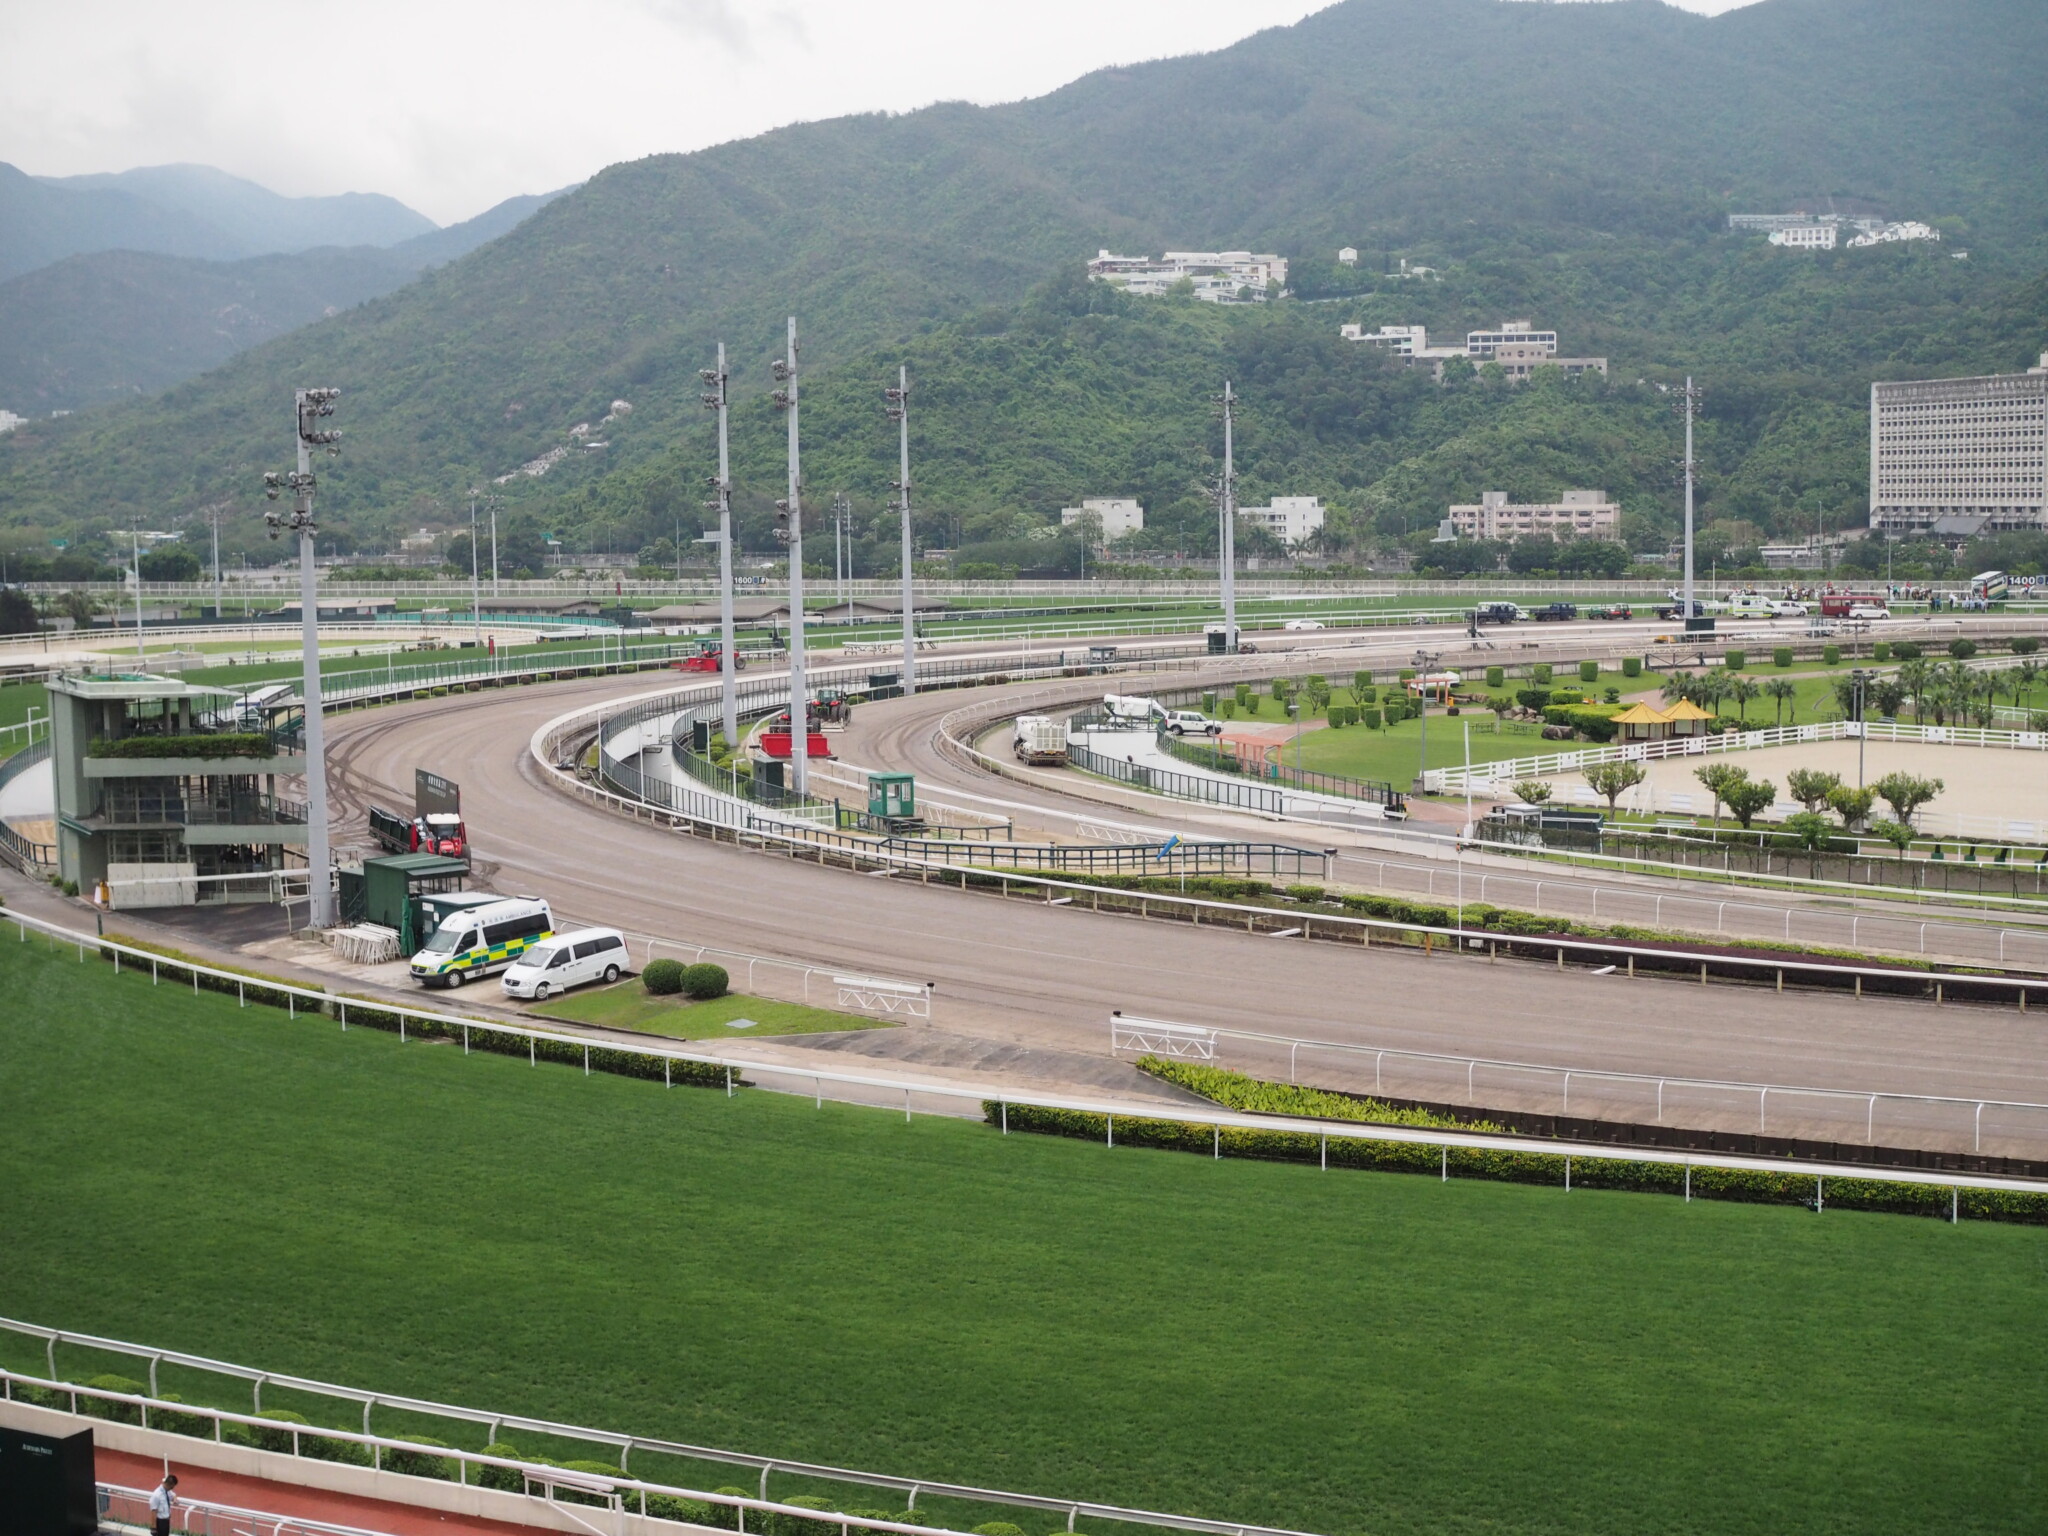 【香港スプリント】4コーナーで4頭が落馬事故 スカイフィールドが勝利